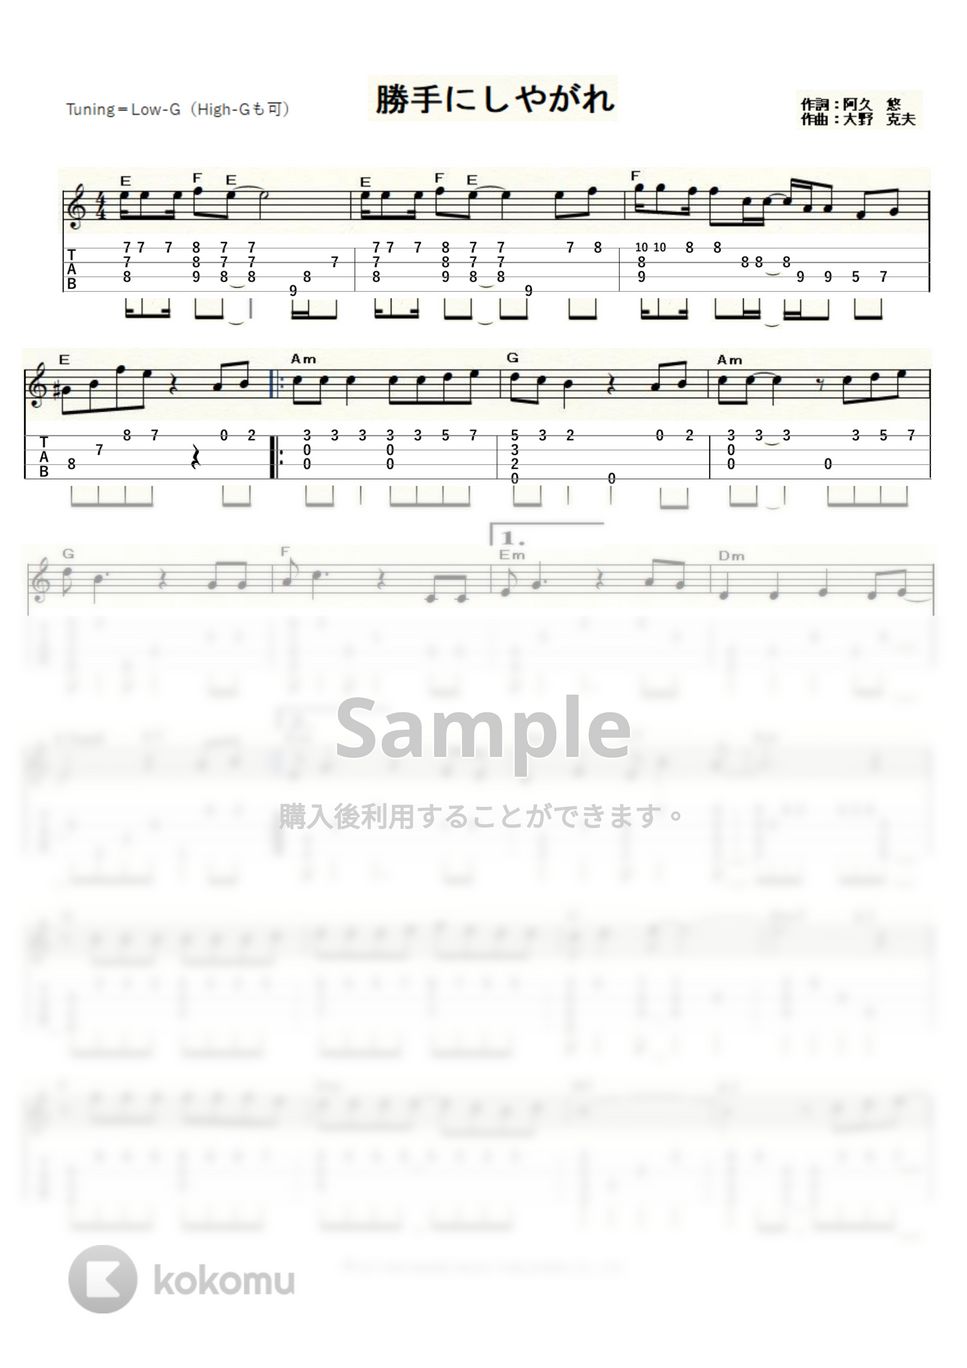 沢田研二 - 勝手にしやがれ (ｳｸﾚﾚｿﾛ / High-G,Low-G / 上級) by ukulelepapa